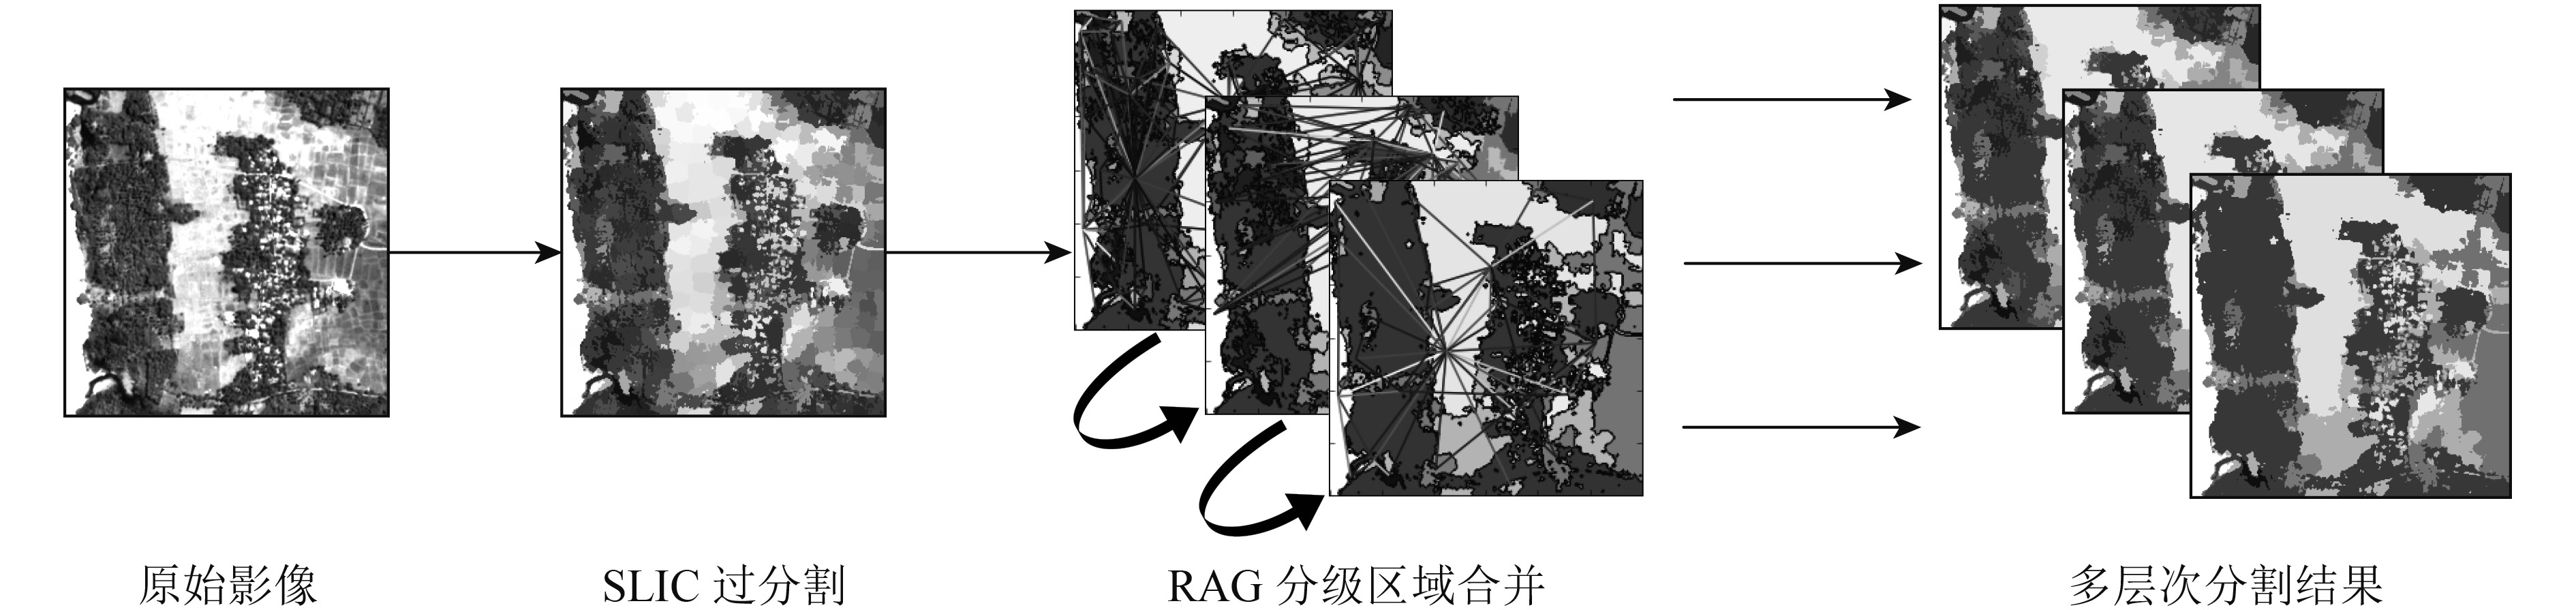 赵敏_图4   基于RAG的多尺度影像分割流程